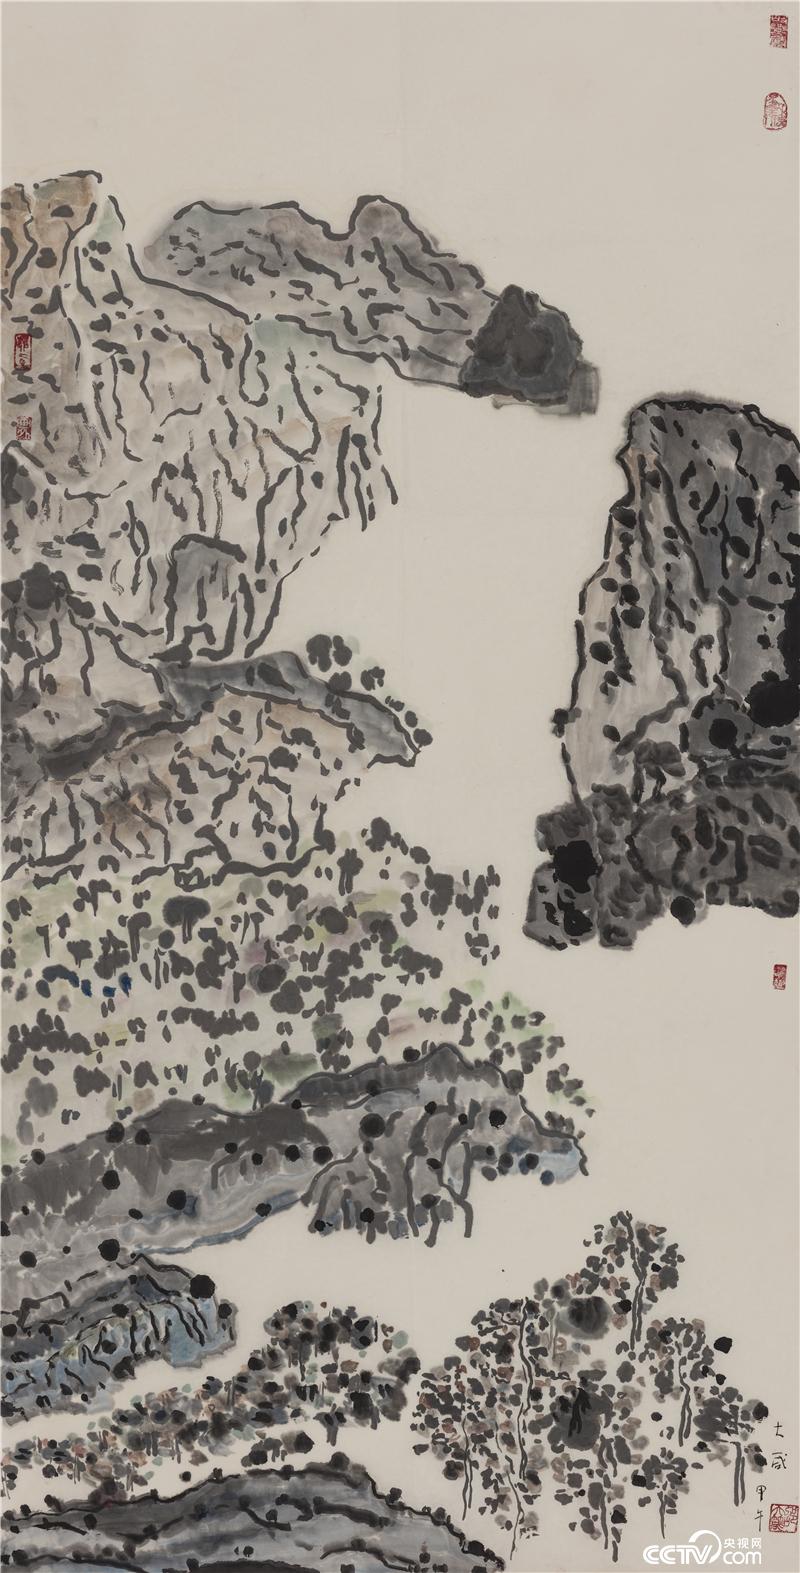  高歌·之二，邵大箴，纸本水墨，70x137cm，2014年